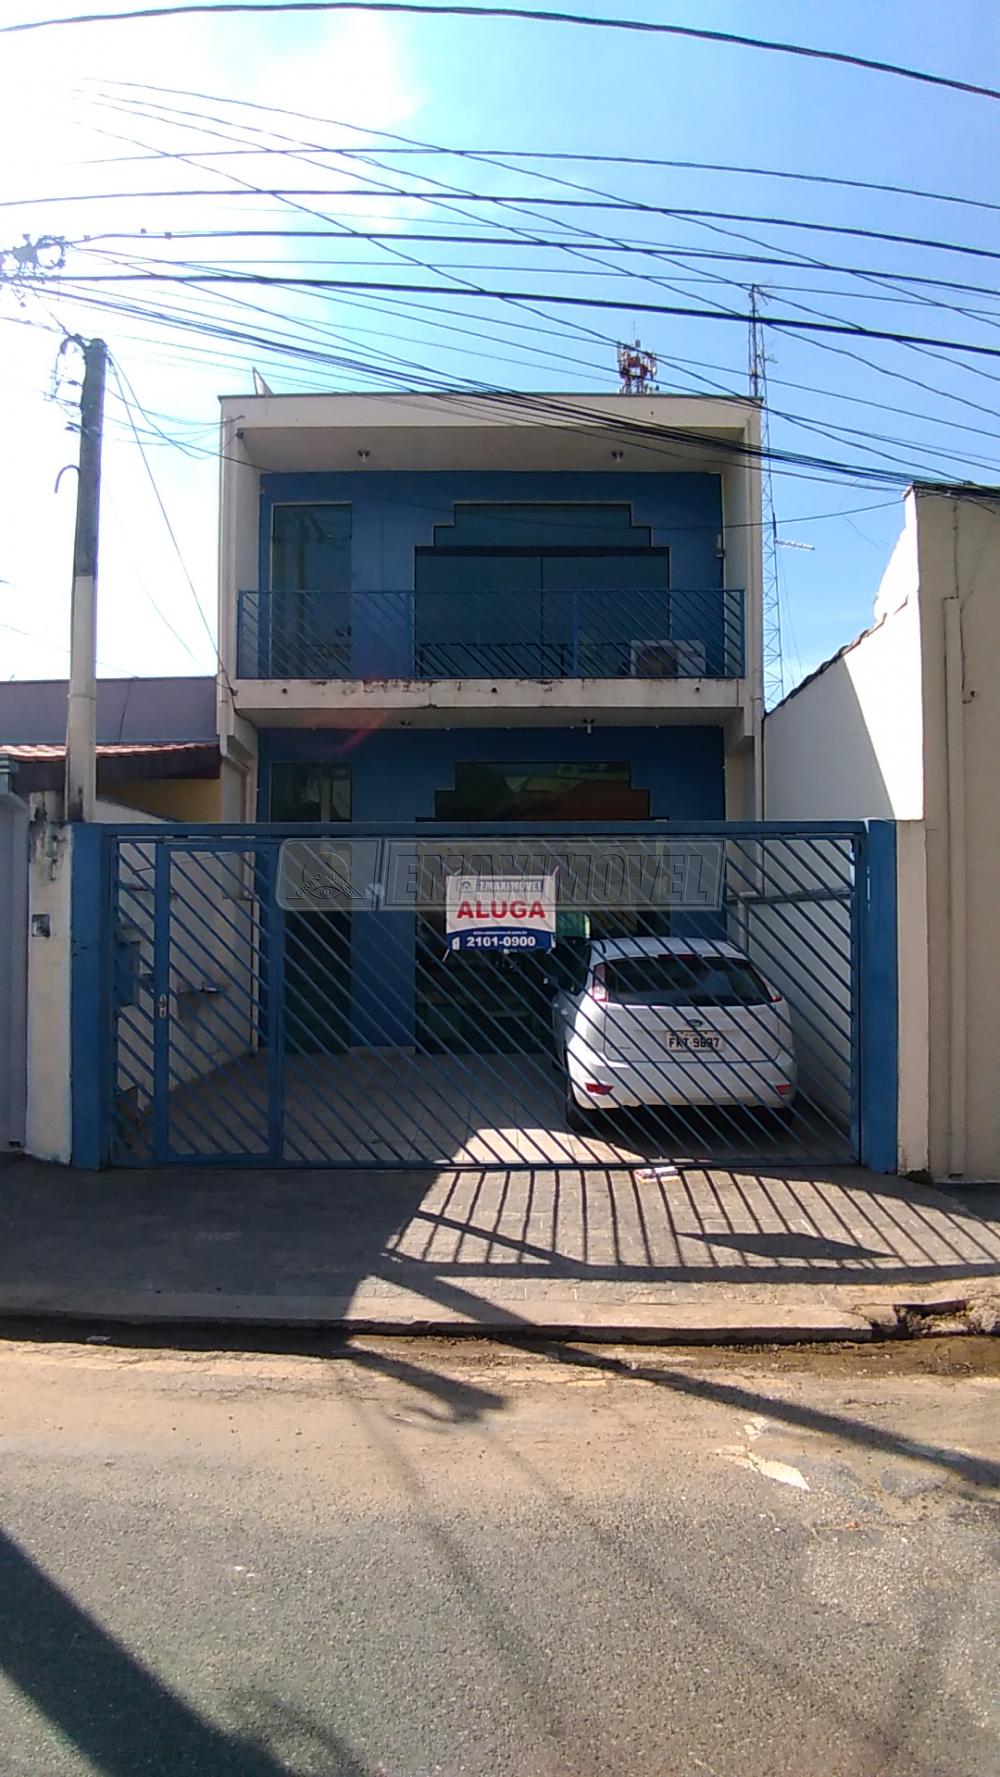 Alugar Salão Comercial / Negócios em Sorocaba R$ 1.800,00 - Foto 1